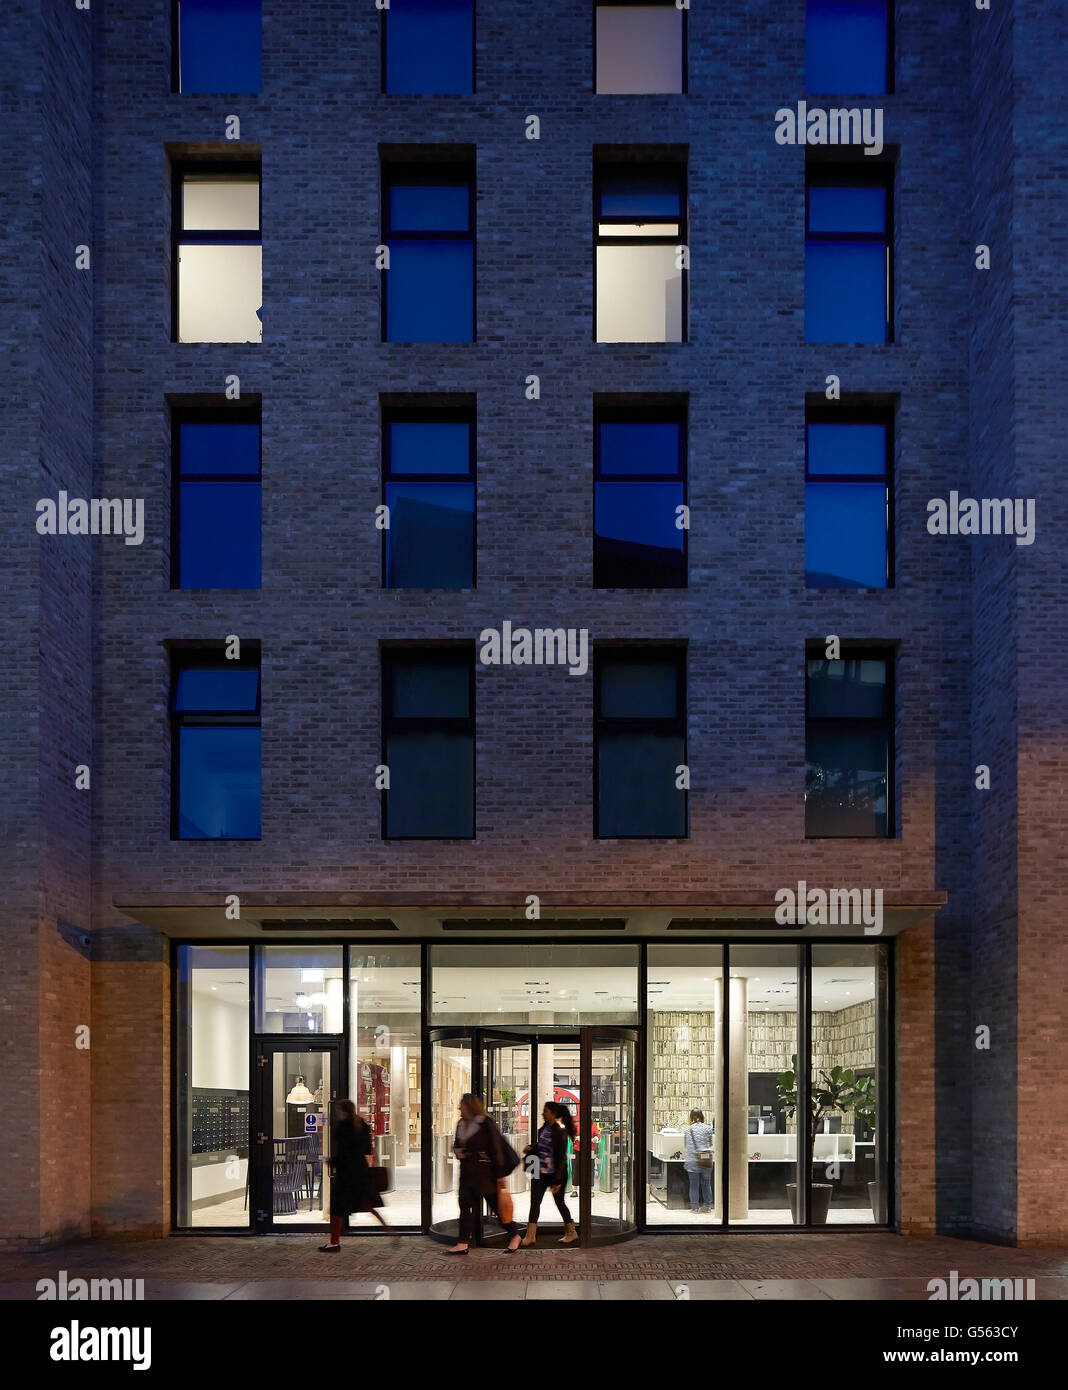 Vorderansicht des Eingang in der Nacht. Frühling Mews, London, Vereinigtes Königreich. Architekt: Manser Praxis, 2015. Stockfoto